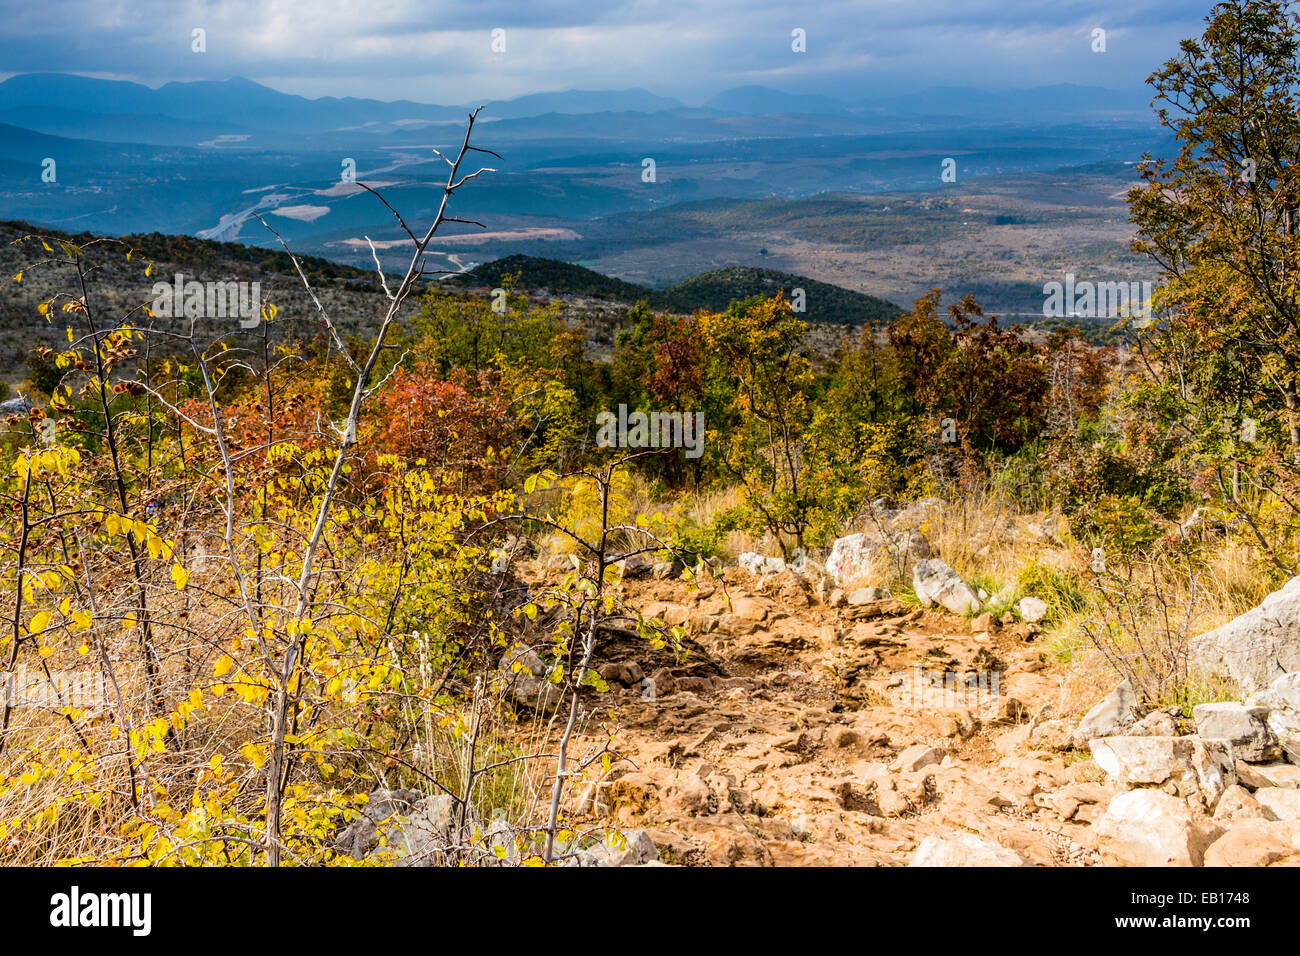 Vista autunnale del Krizevac (Cross) montagna a Medjugorje in Bosnia ed Erzegovina: marroncina alberi, erbe infestanti verdi, arancione e giallo di foglie e di rocce grigie Foto Stock